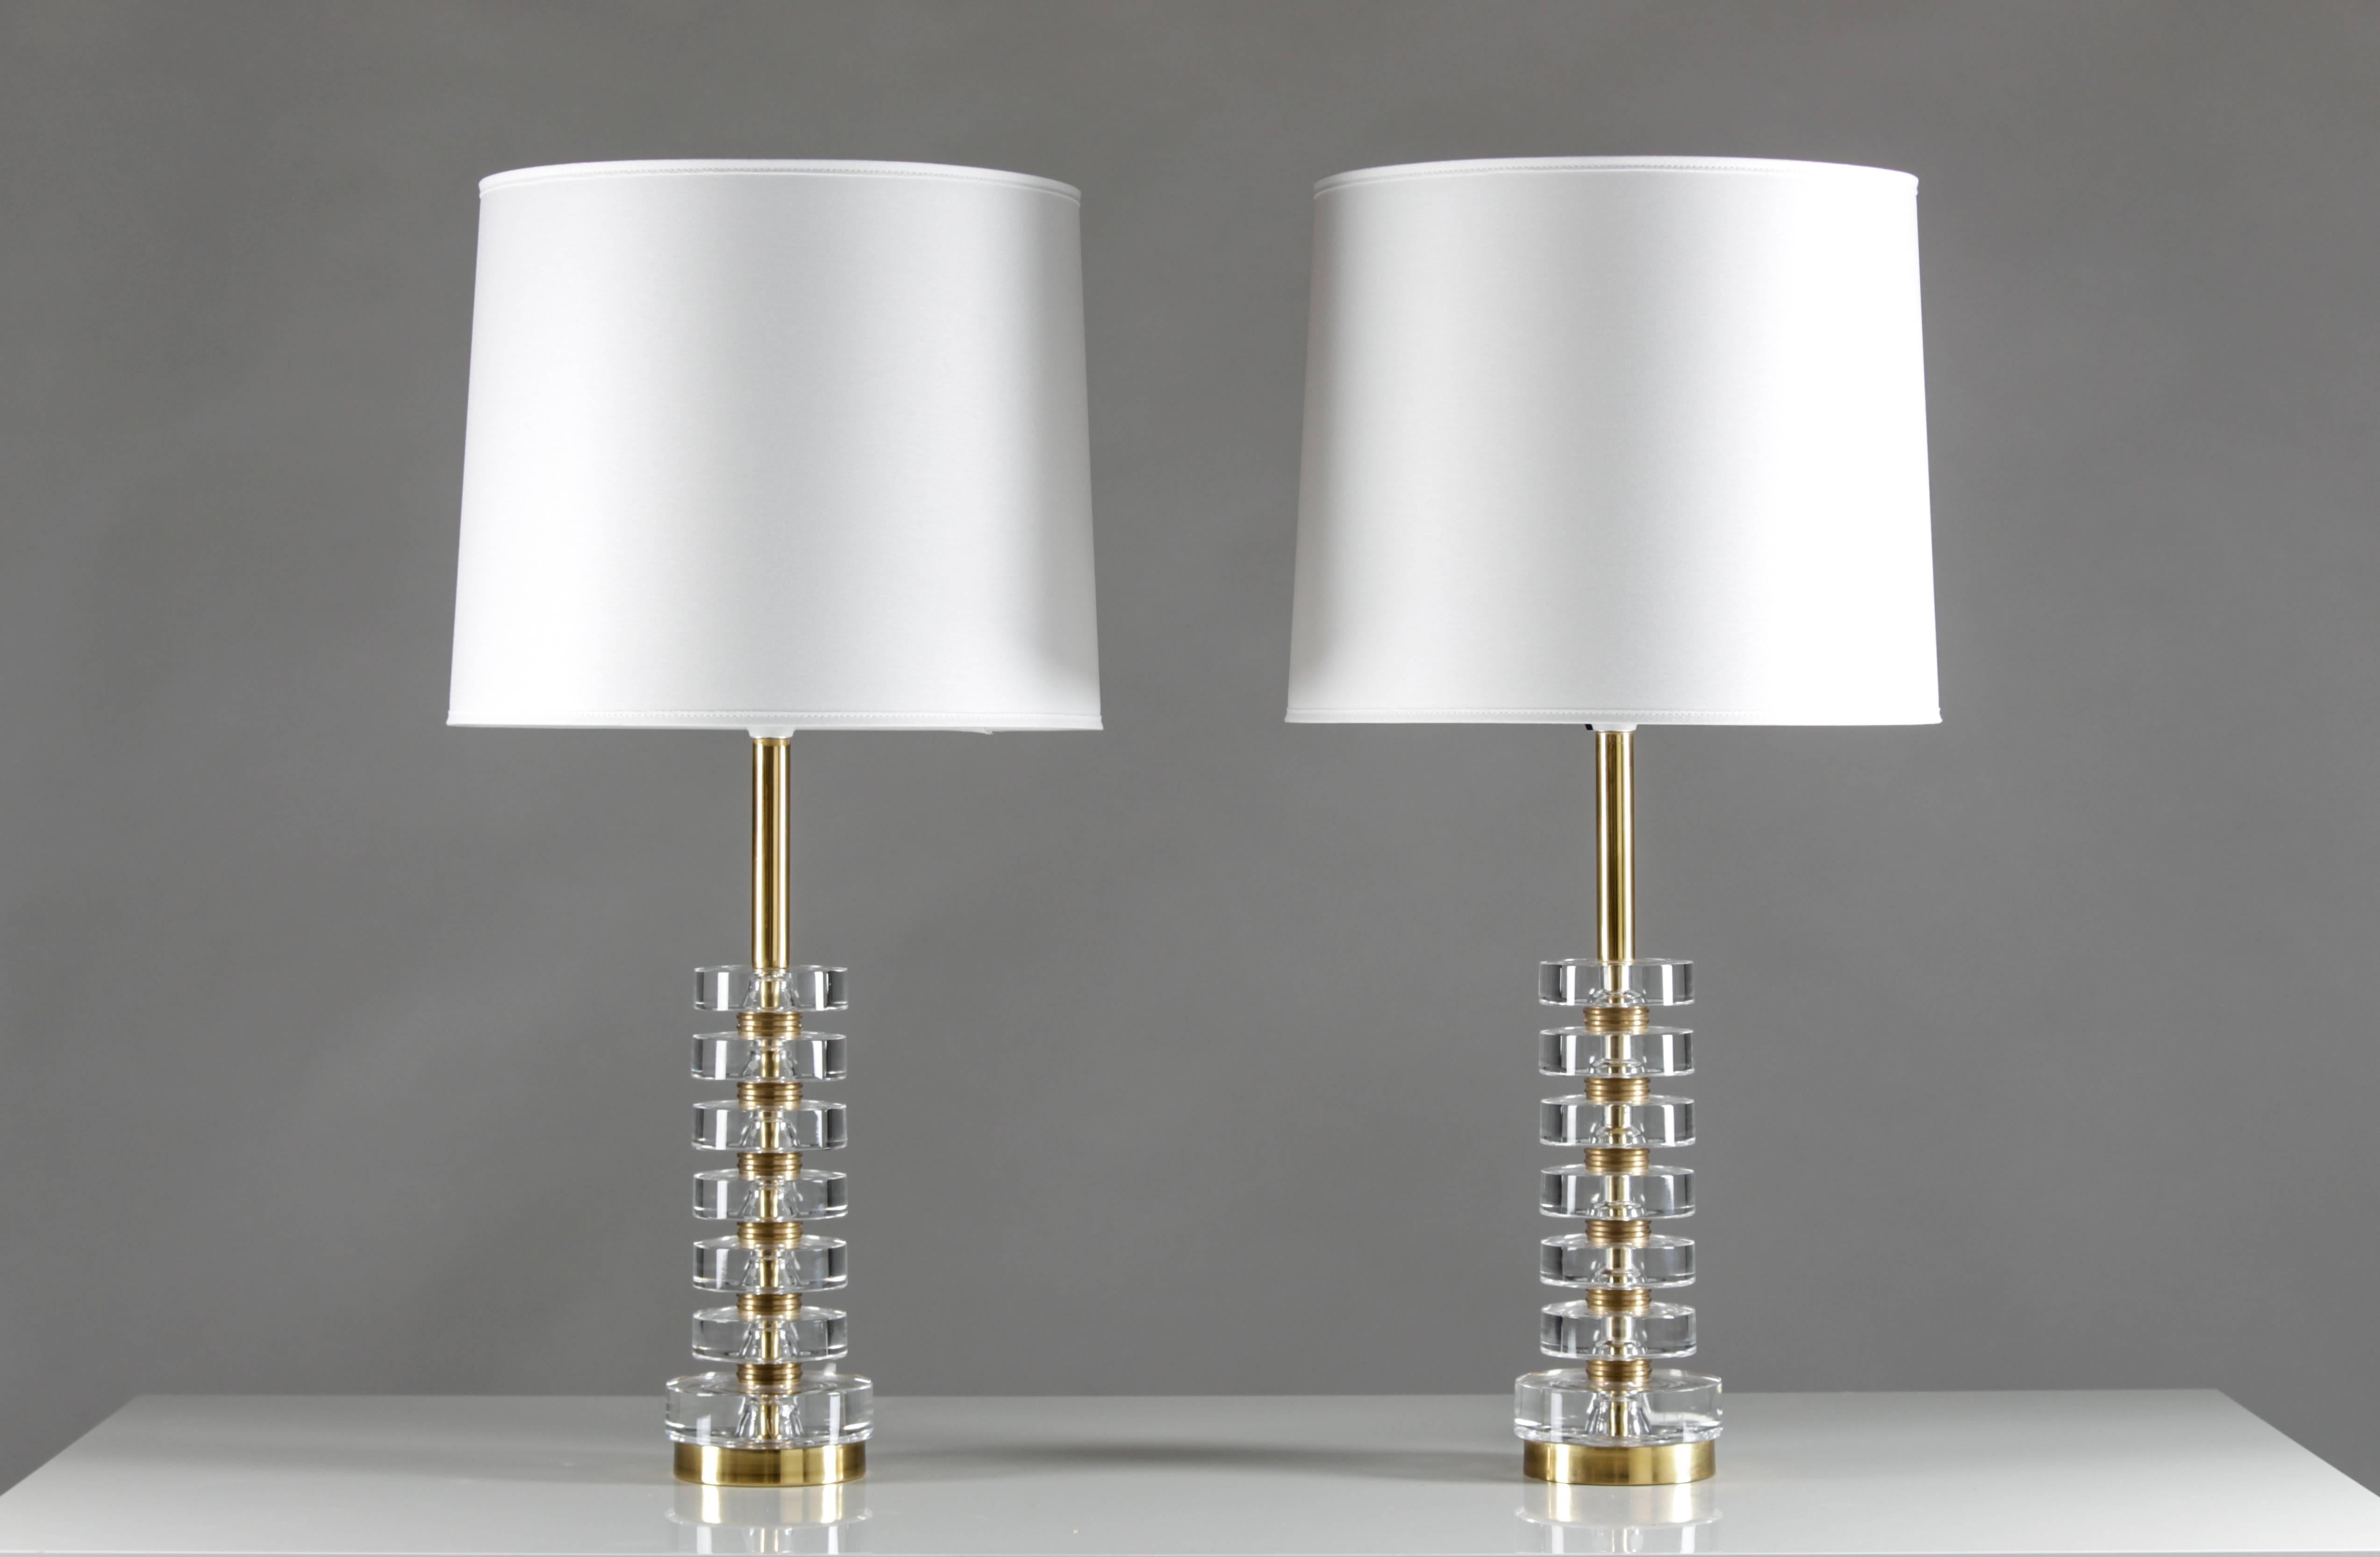 Vier prächtige Tischlampen von Carl Fagerlund für Orrefors, Schweden.
Die Lampen bestehen aus sechs Scheiben aus klarem Kristallglas, die durch massive Messingscheiben getrennt sind. 
Zustand: Die Lampen sind in sehr gutem Originalzustand. Das